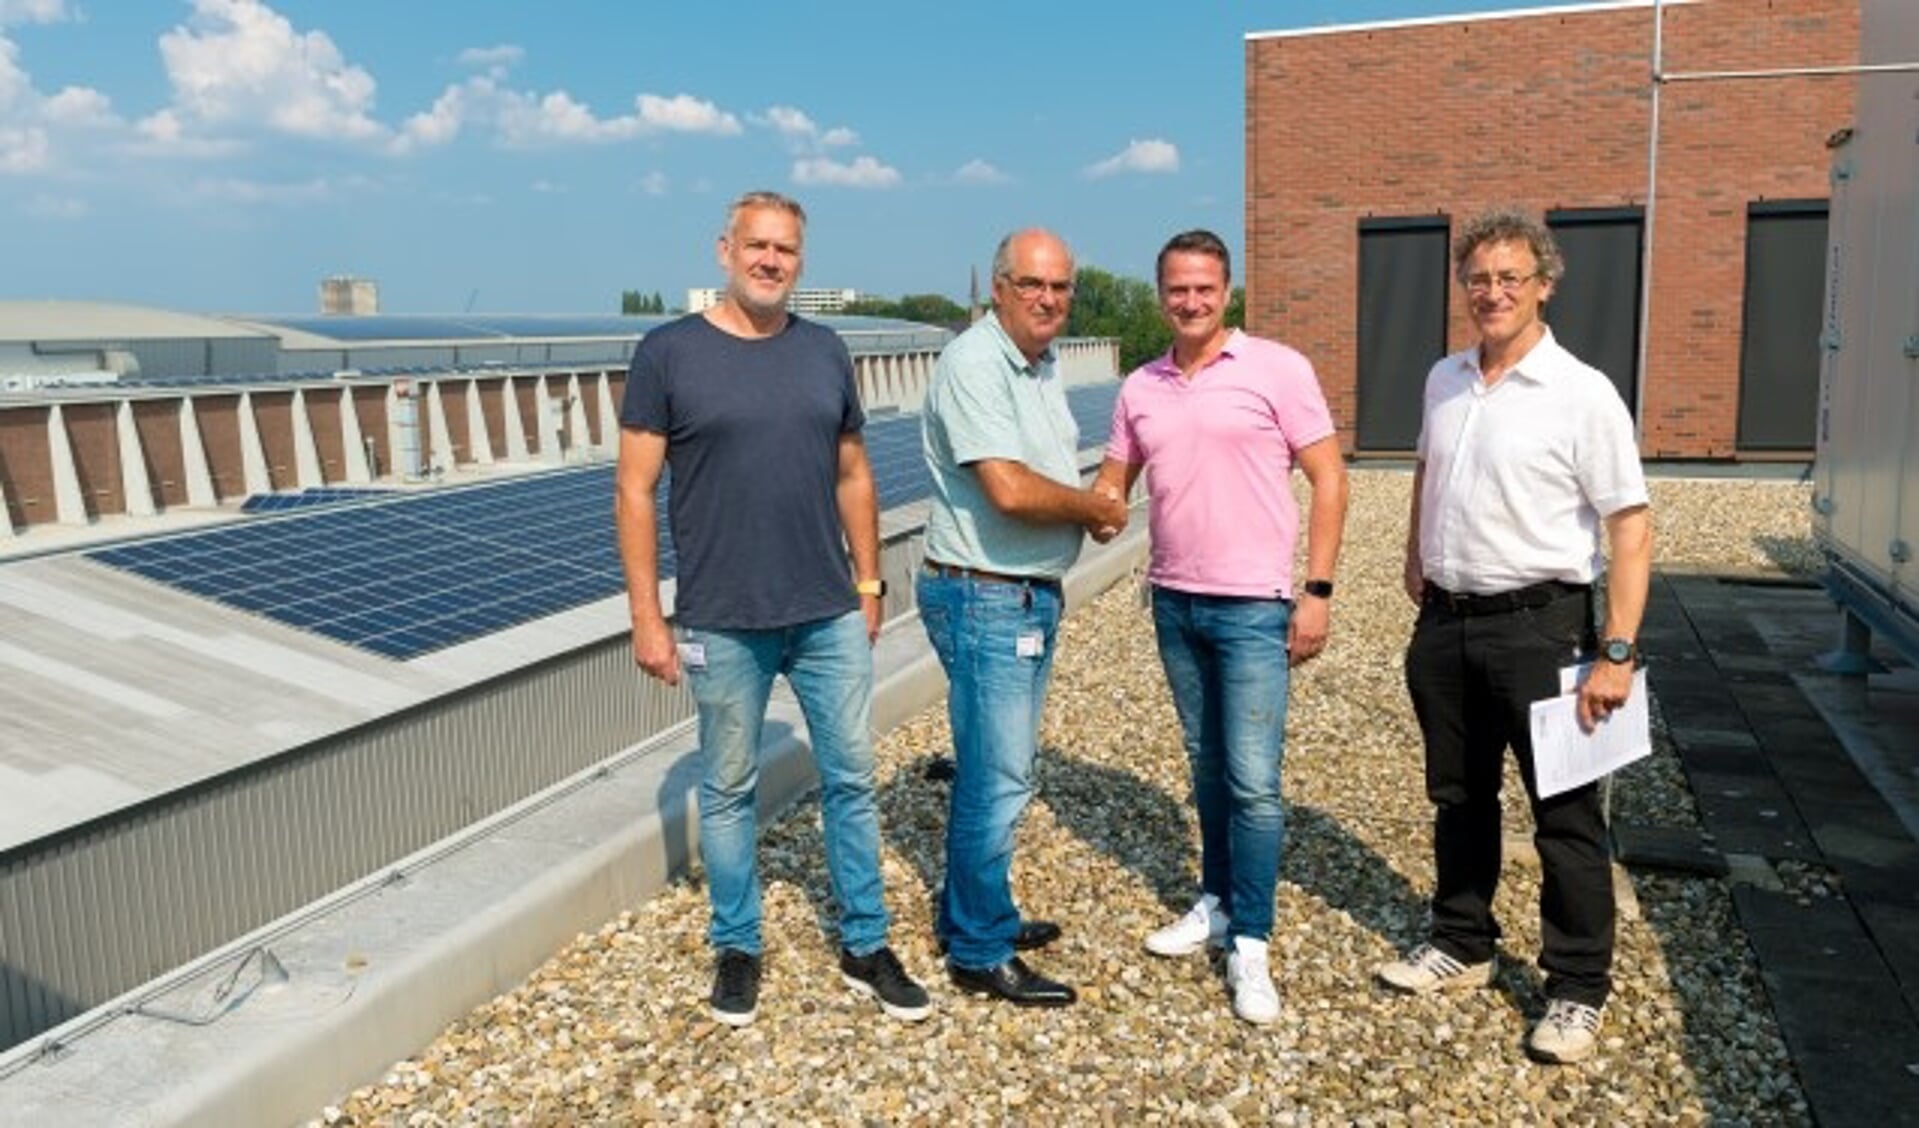 Door de nauwe samenwerking tussen MARIN, medewerkers MARIN en inwoners wekken inmiddels 215 huishoudens duurzame stroom op bij MARIN met 2800 zonnepanelen. 